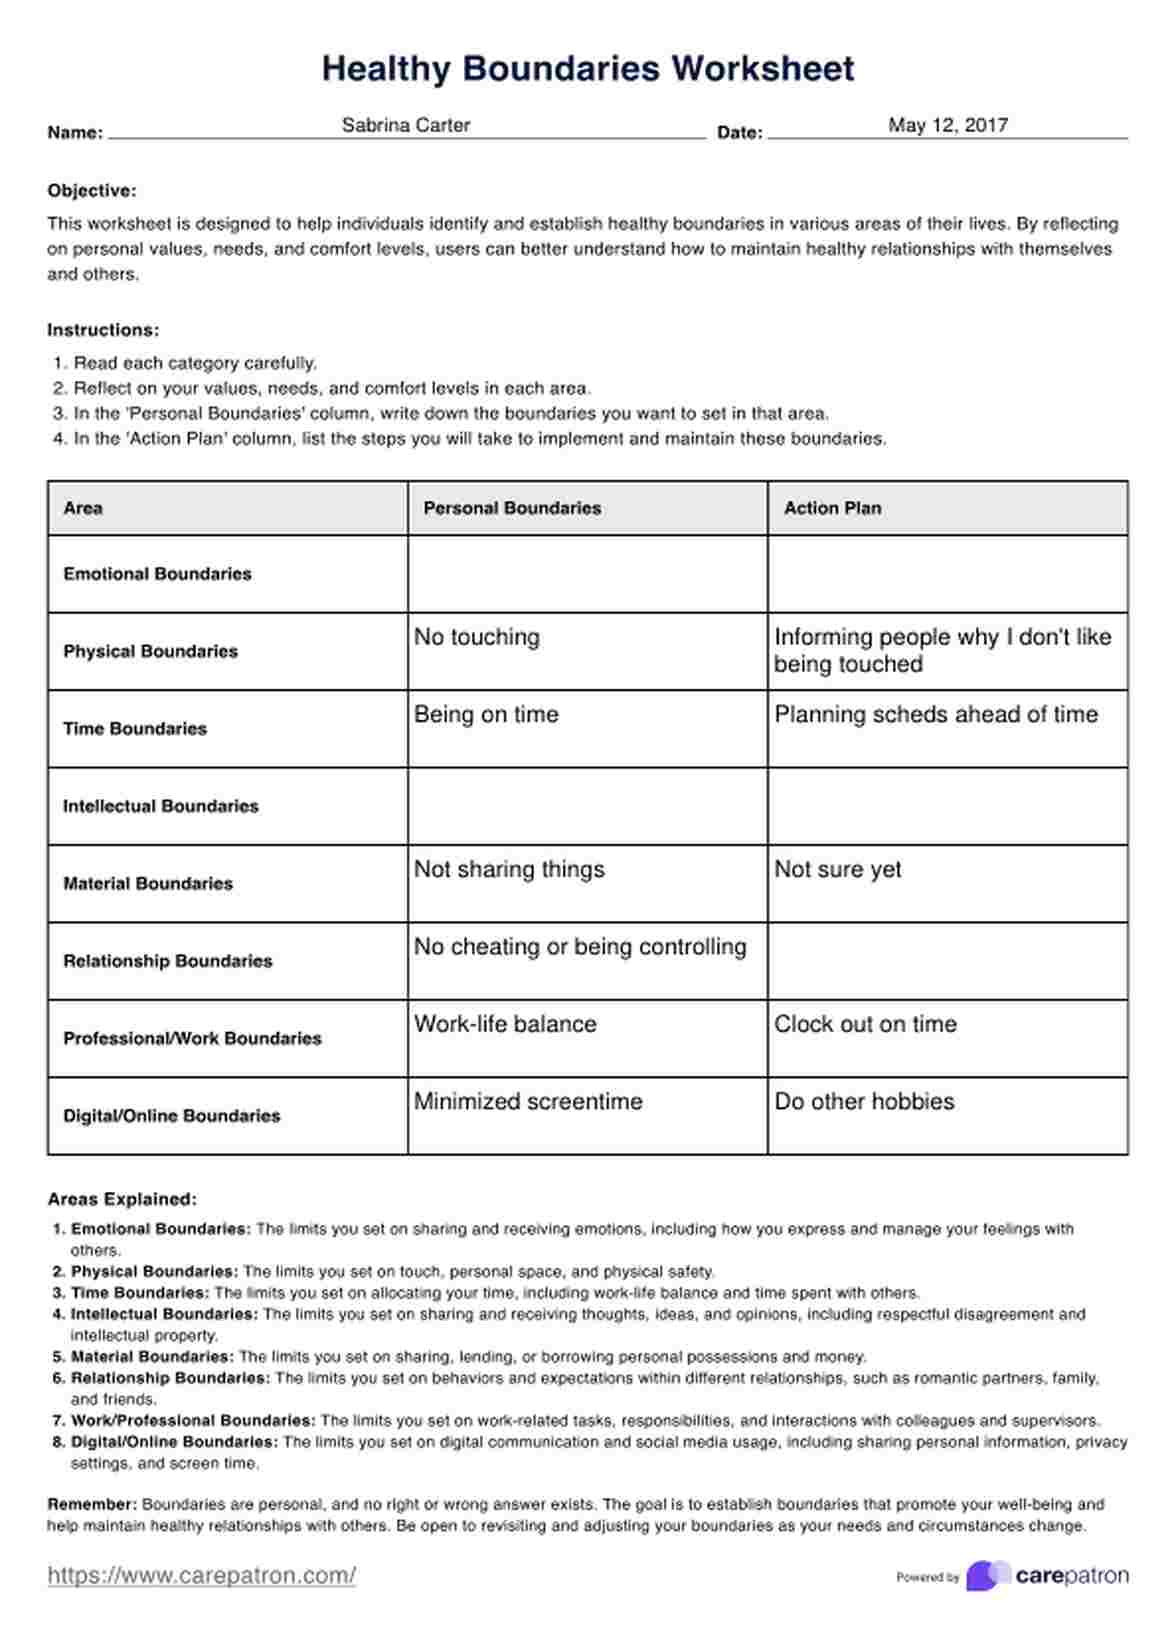 Healthy Boundaries Worksheet PDF Example